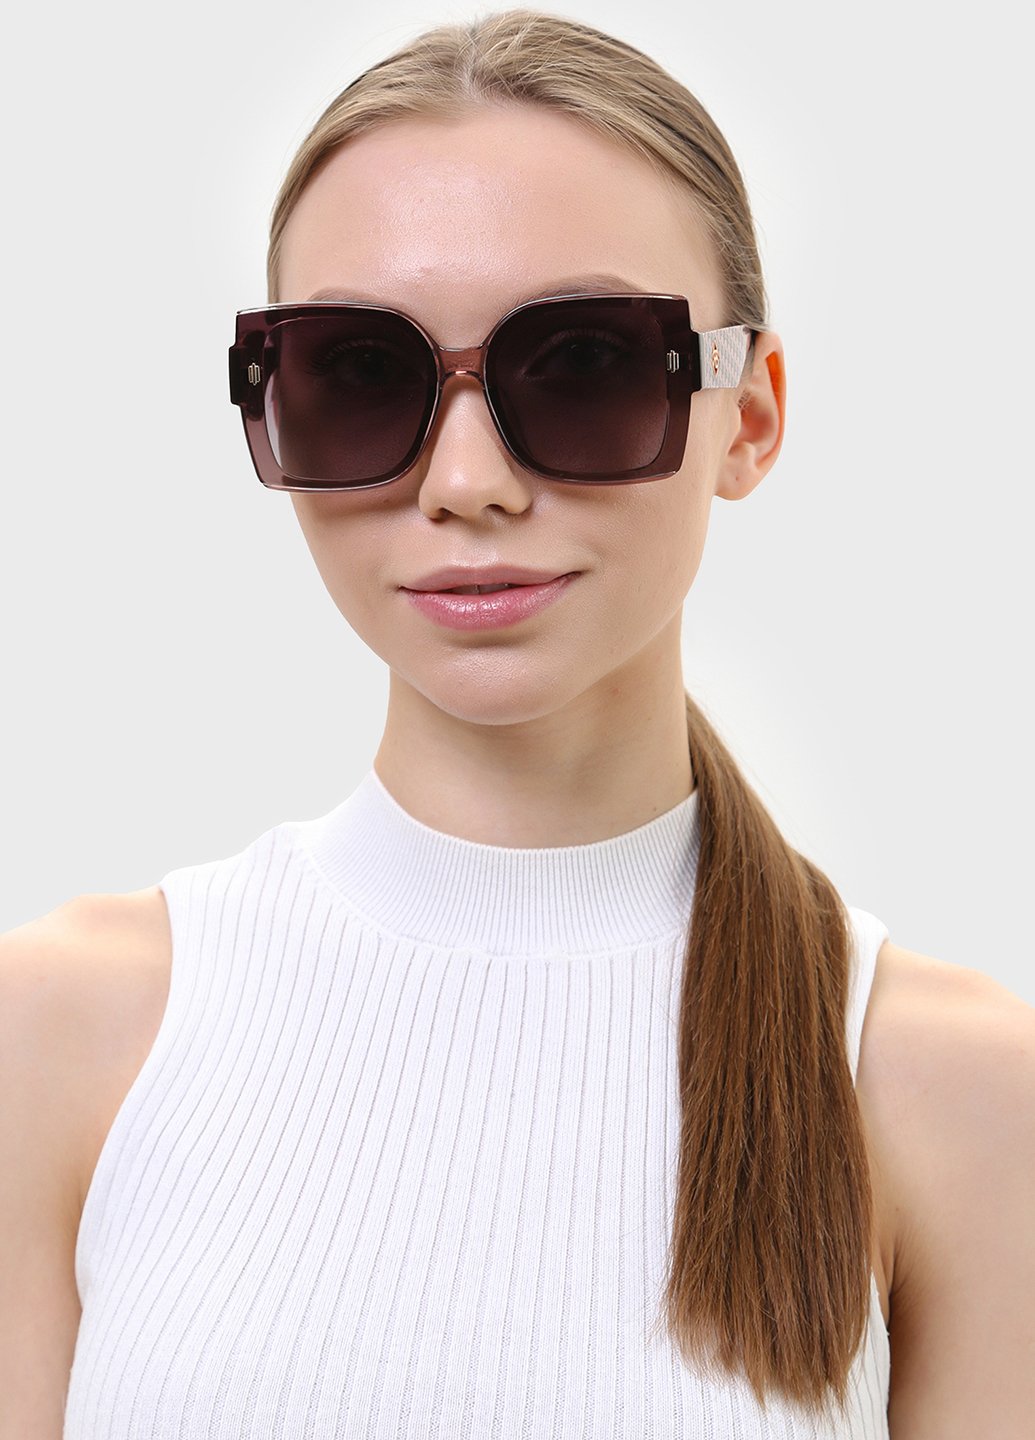 Купить Женские солнцезащитные очки Rita Bradley с поляризацией RB726 112056 в интернет-магазине